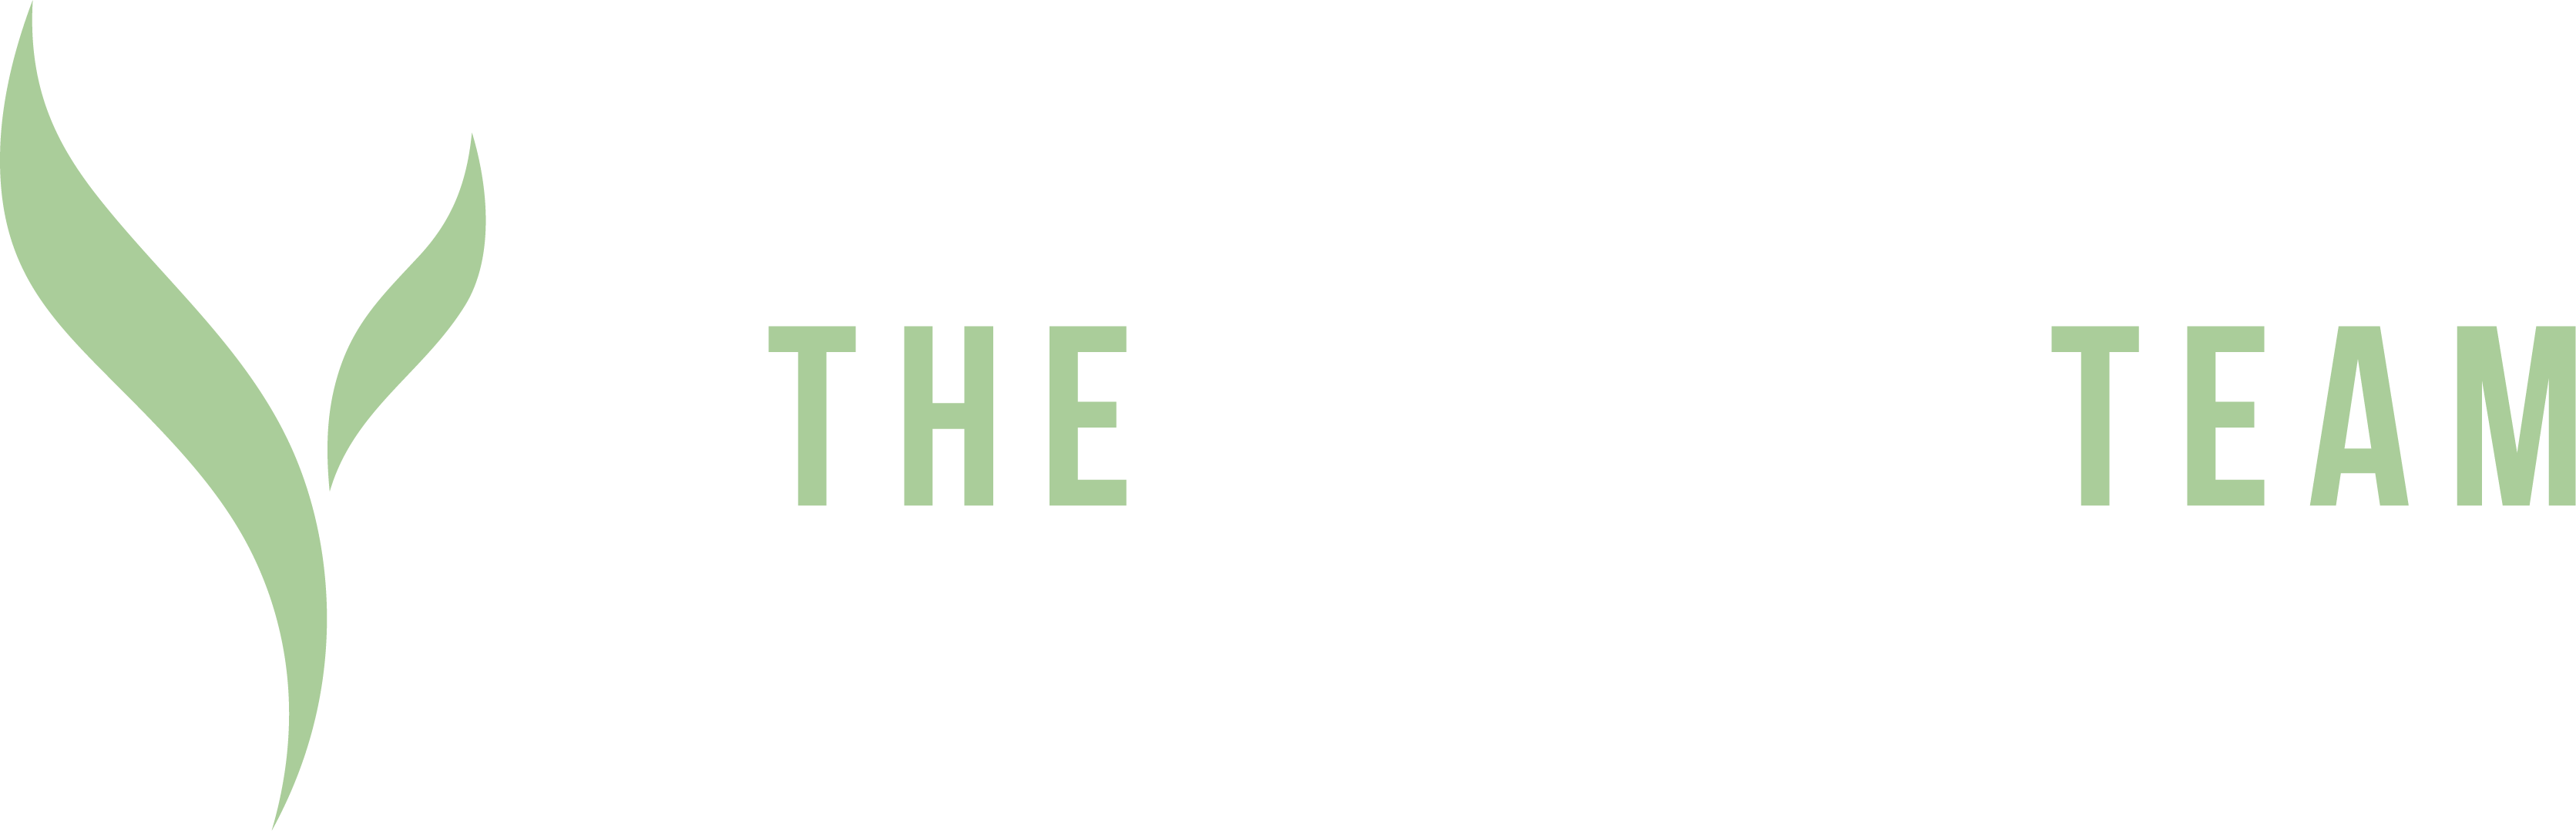 The Cancer Team